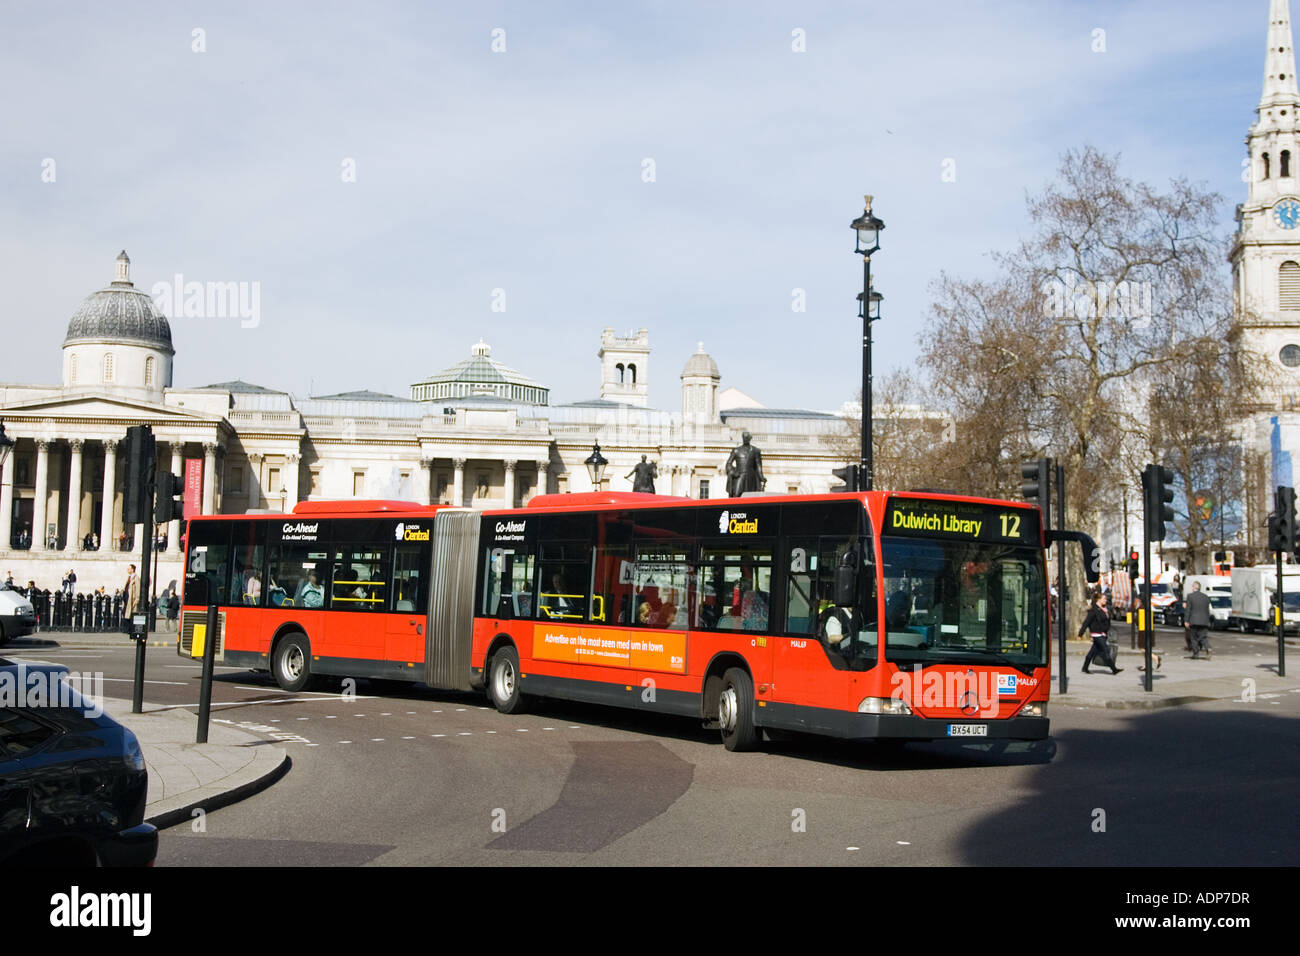 Transports publics Bus unique decker bendy voyageant à Trafalgar Square Londres Angleterre Royaume-uni centre-ville Banque D'Images